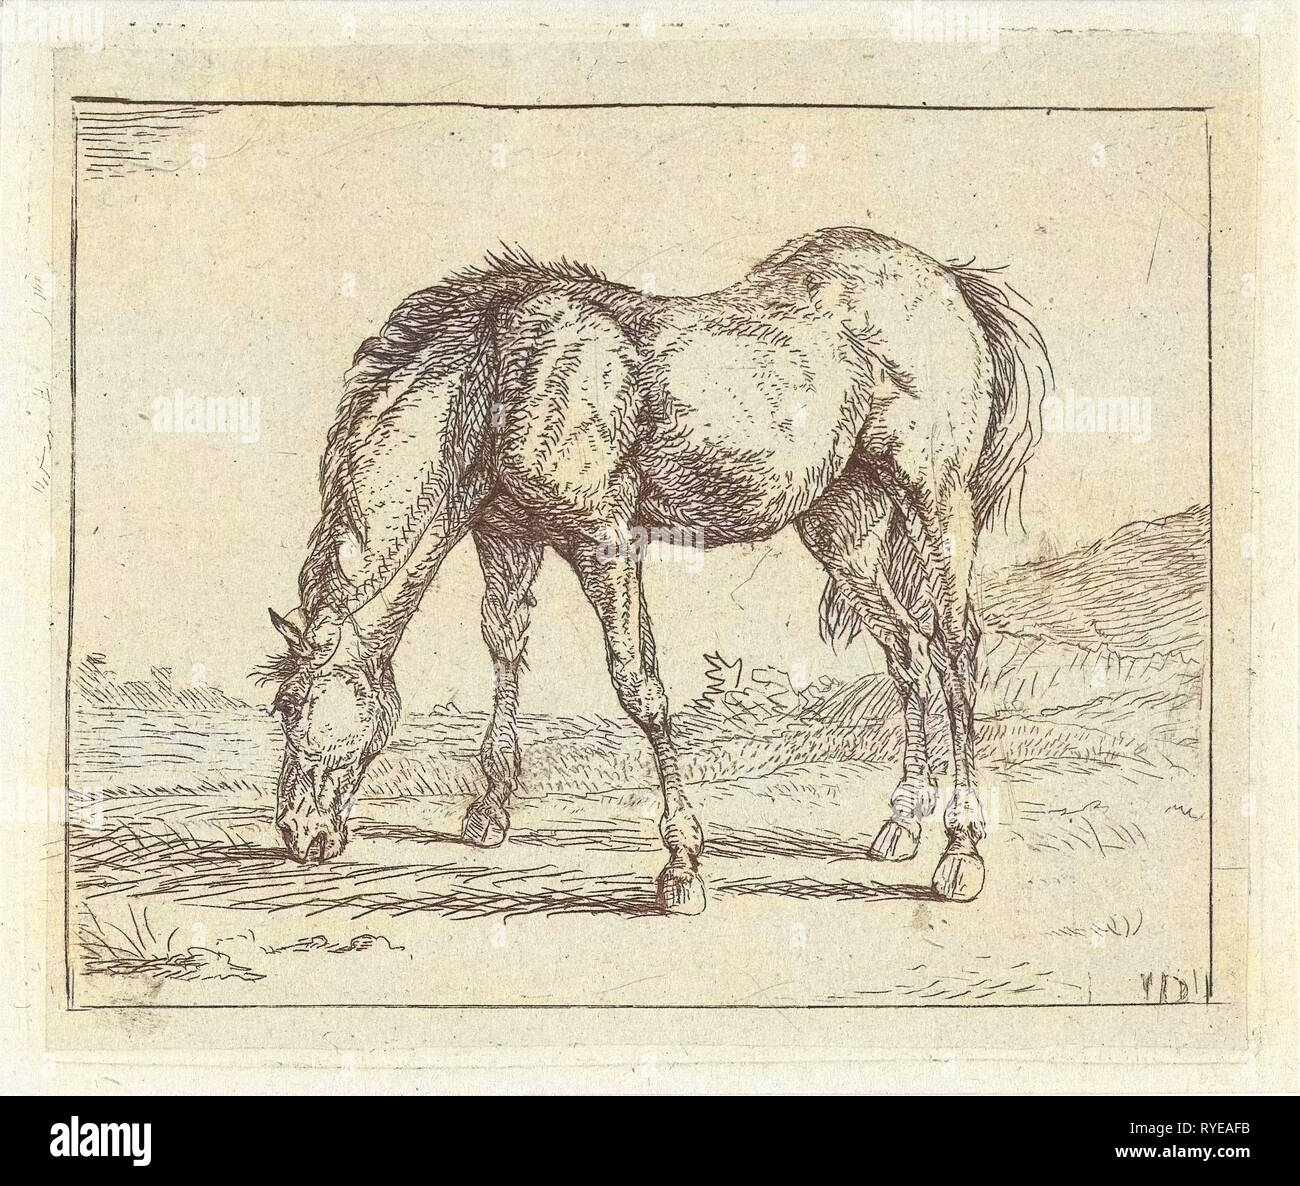 Cavallo al pascolo a sinistra, Jan Dasveldt, 1780 - 1855 Foto Stock